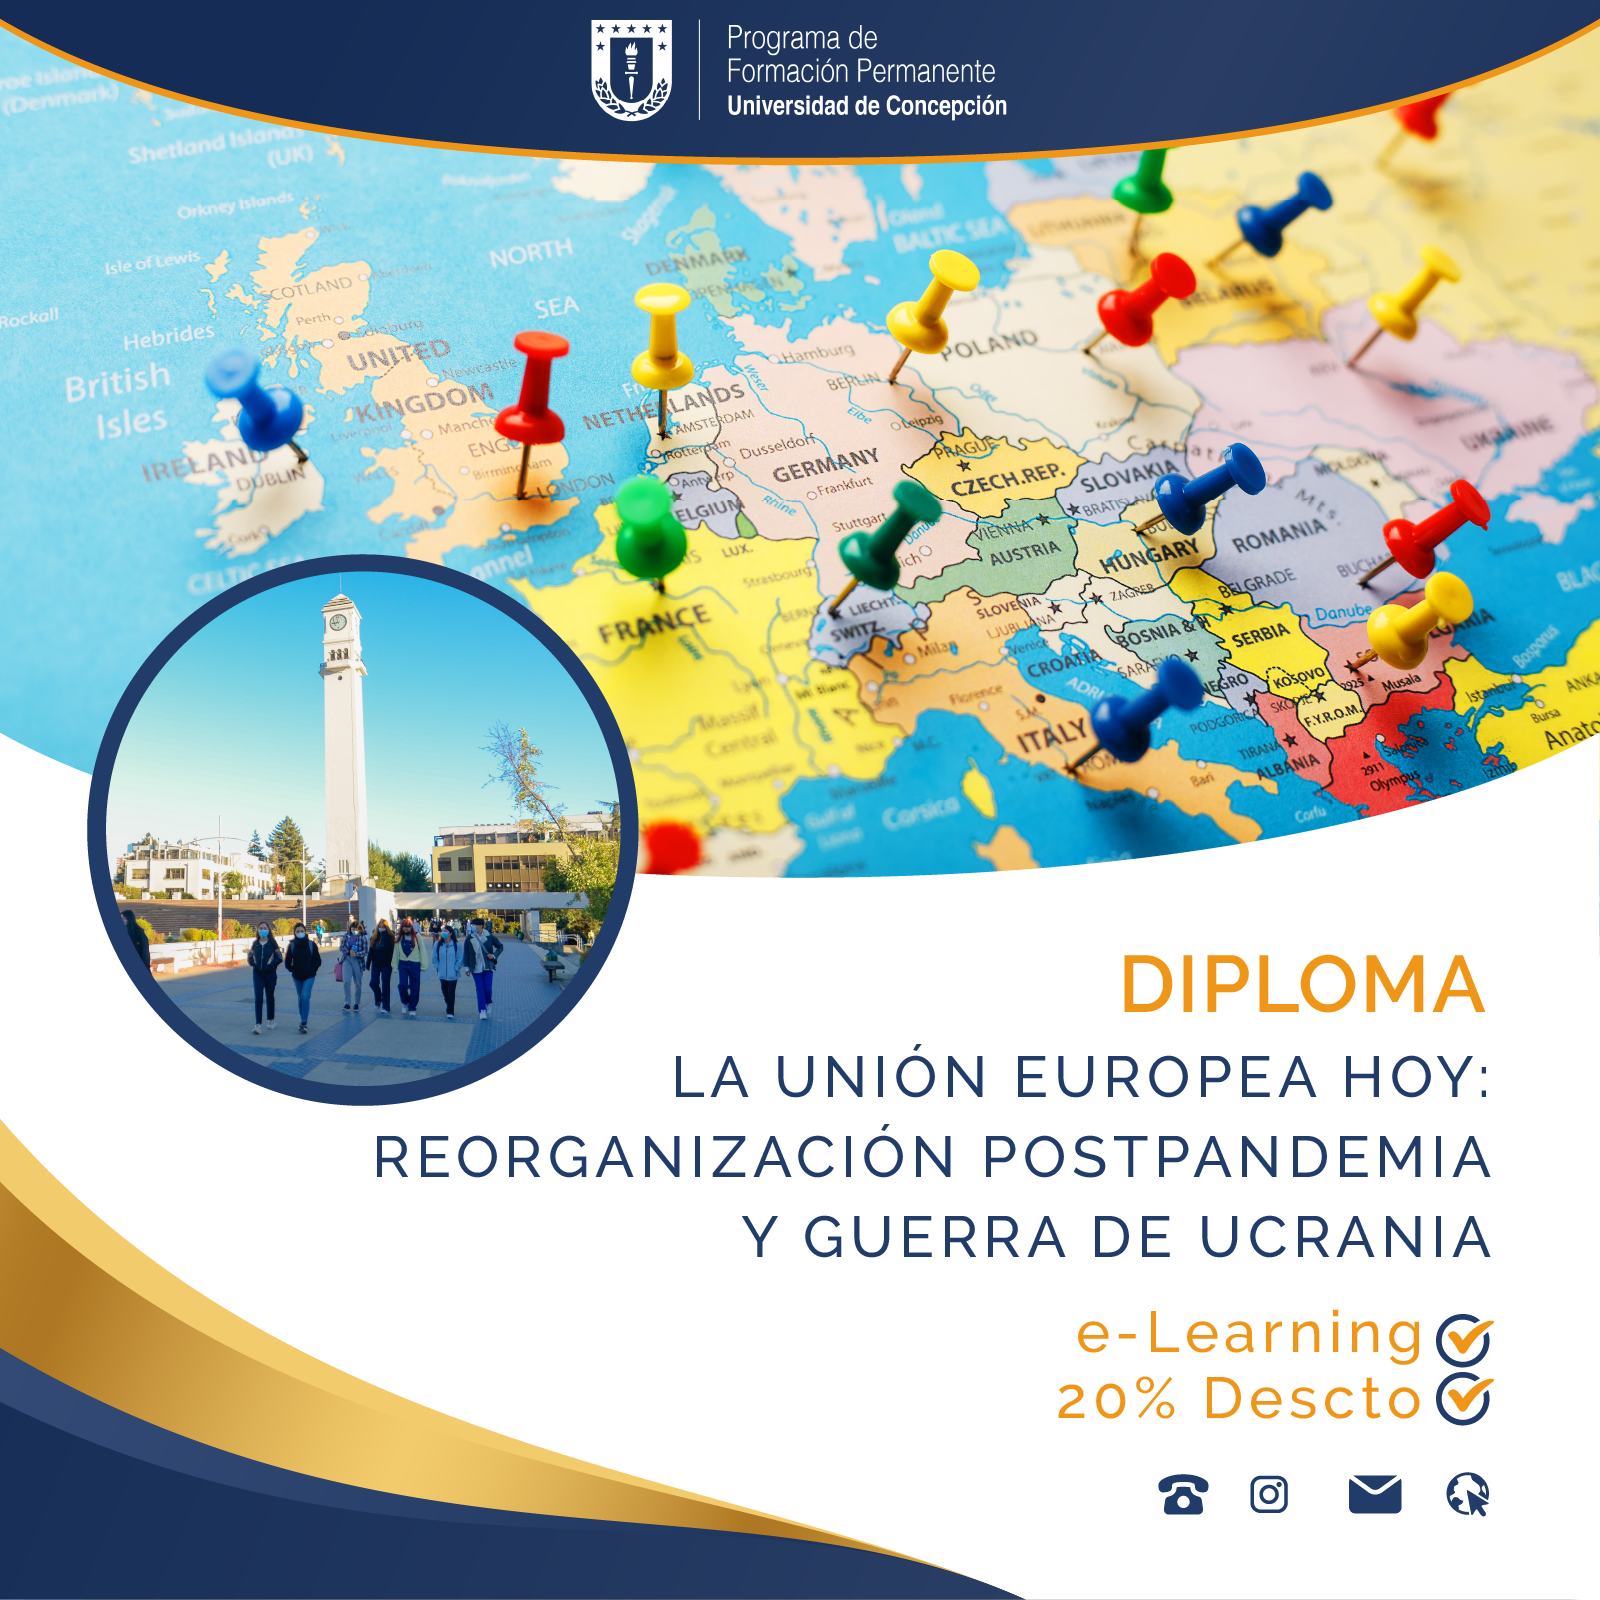 El Centro de Estudios Europeos UdeC presenta nuevo diploma e-learning “La Unión Europea Hoy”